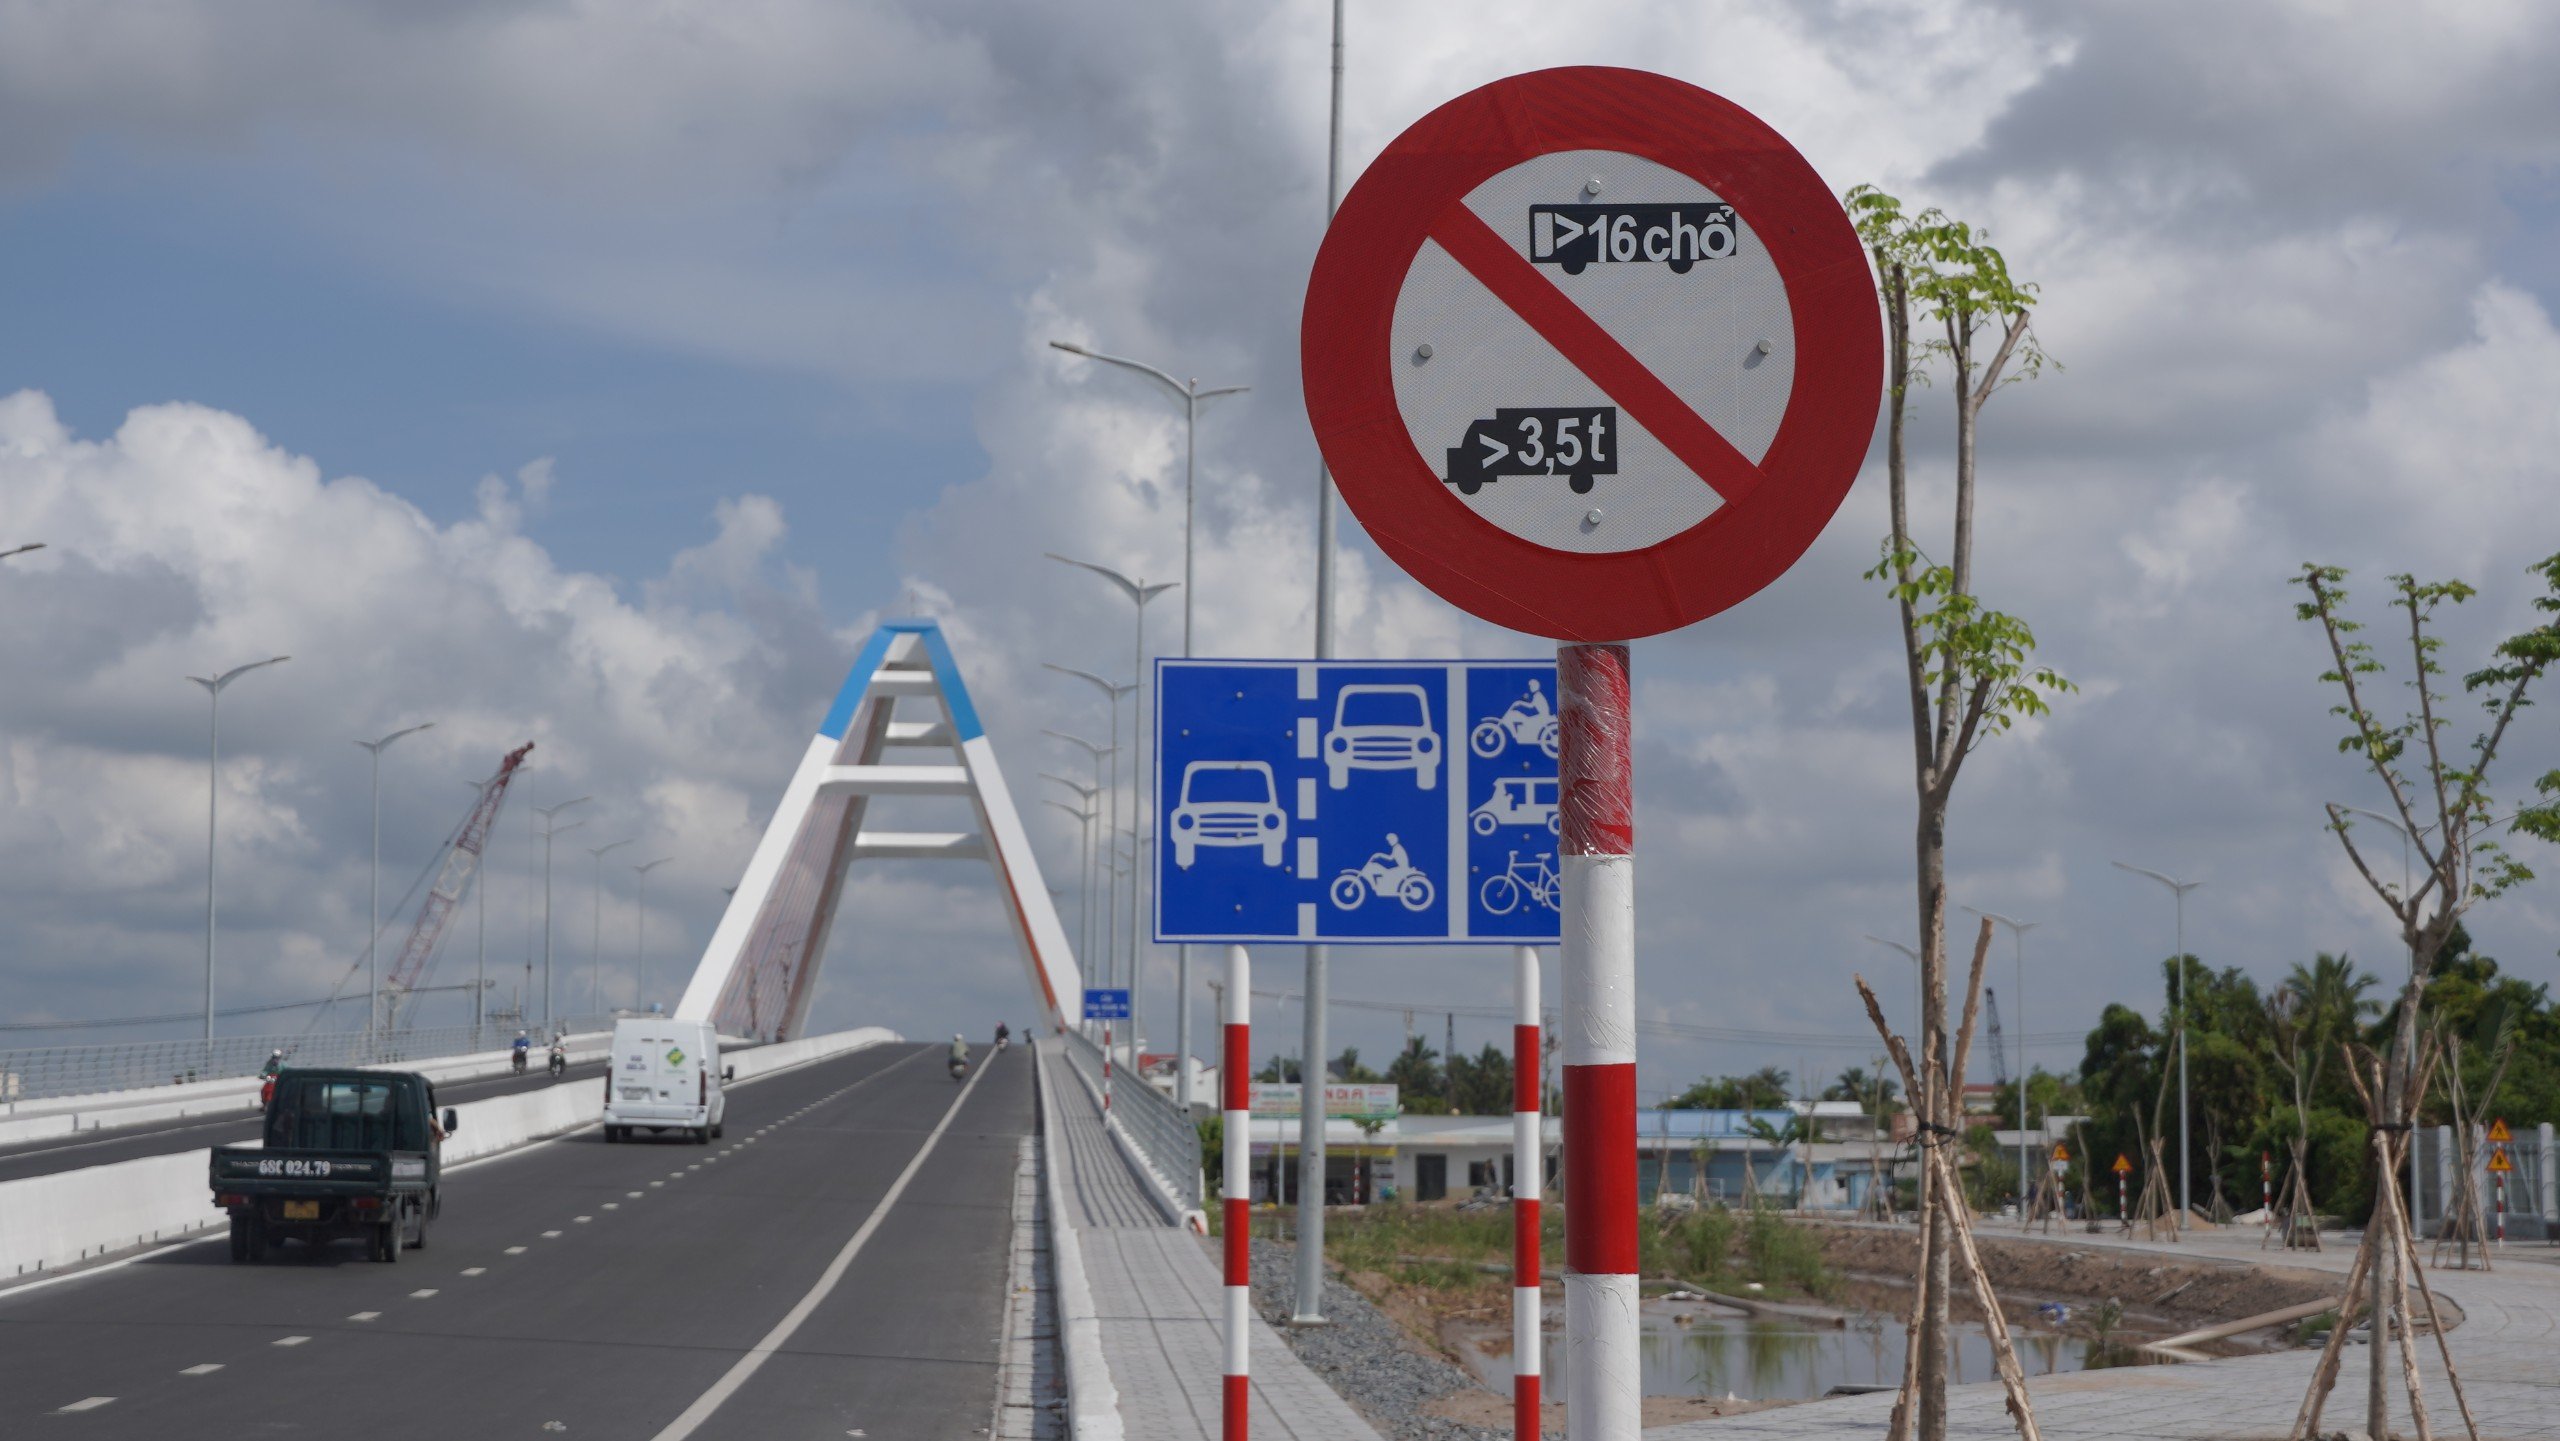 Sẽ tháo biển cấm xe tải trên 3,5 tấn, xe khách trên 16 chỗ qua cầu Trần Hoàng Na- Ảnh 1.